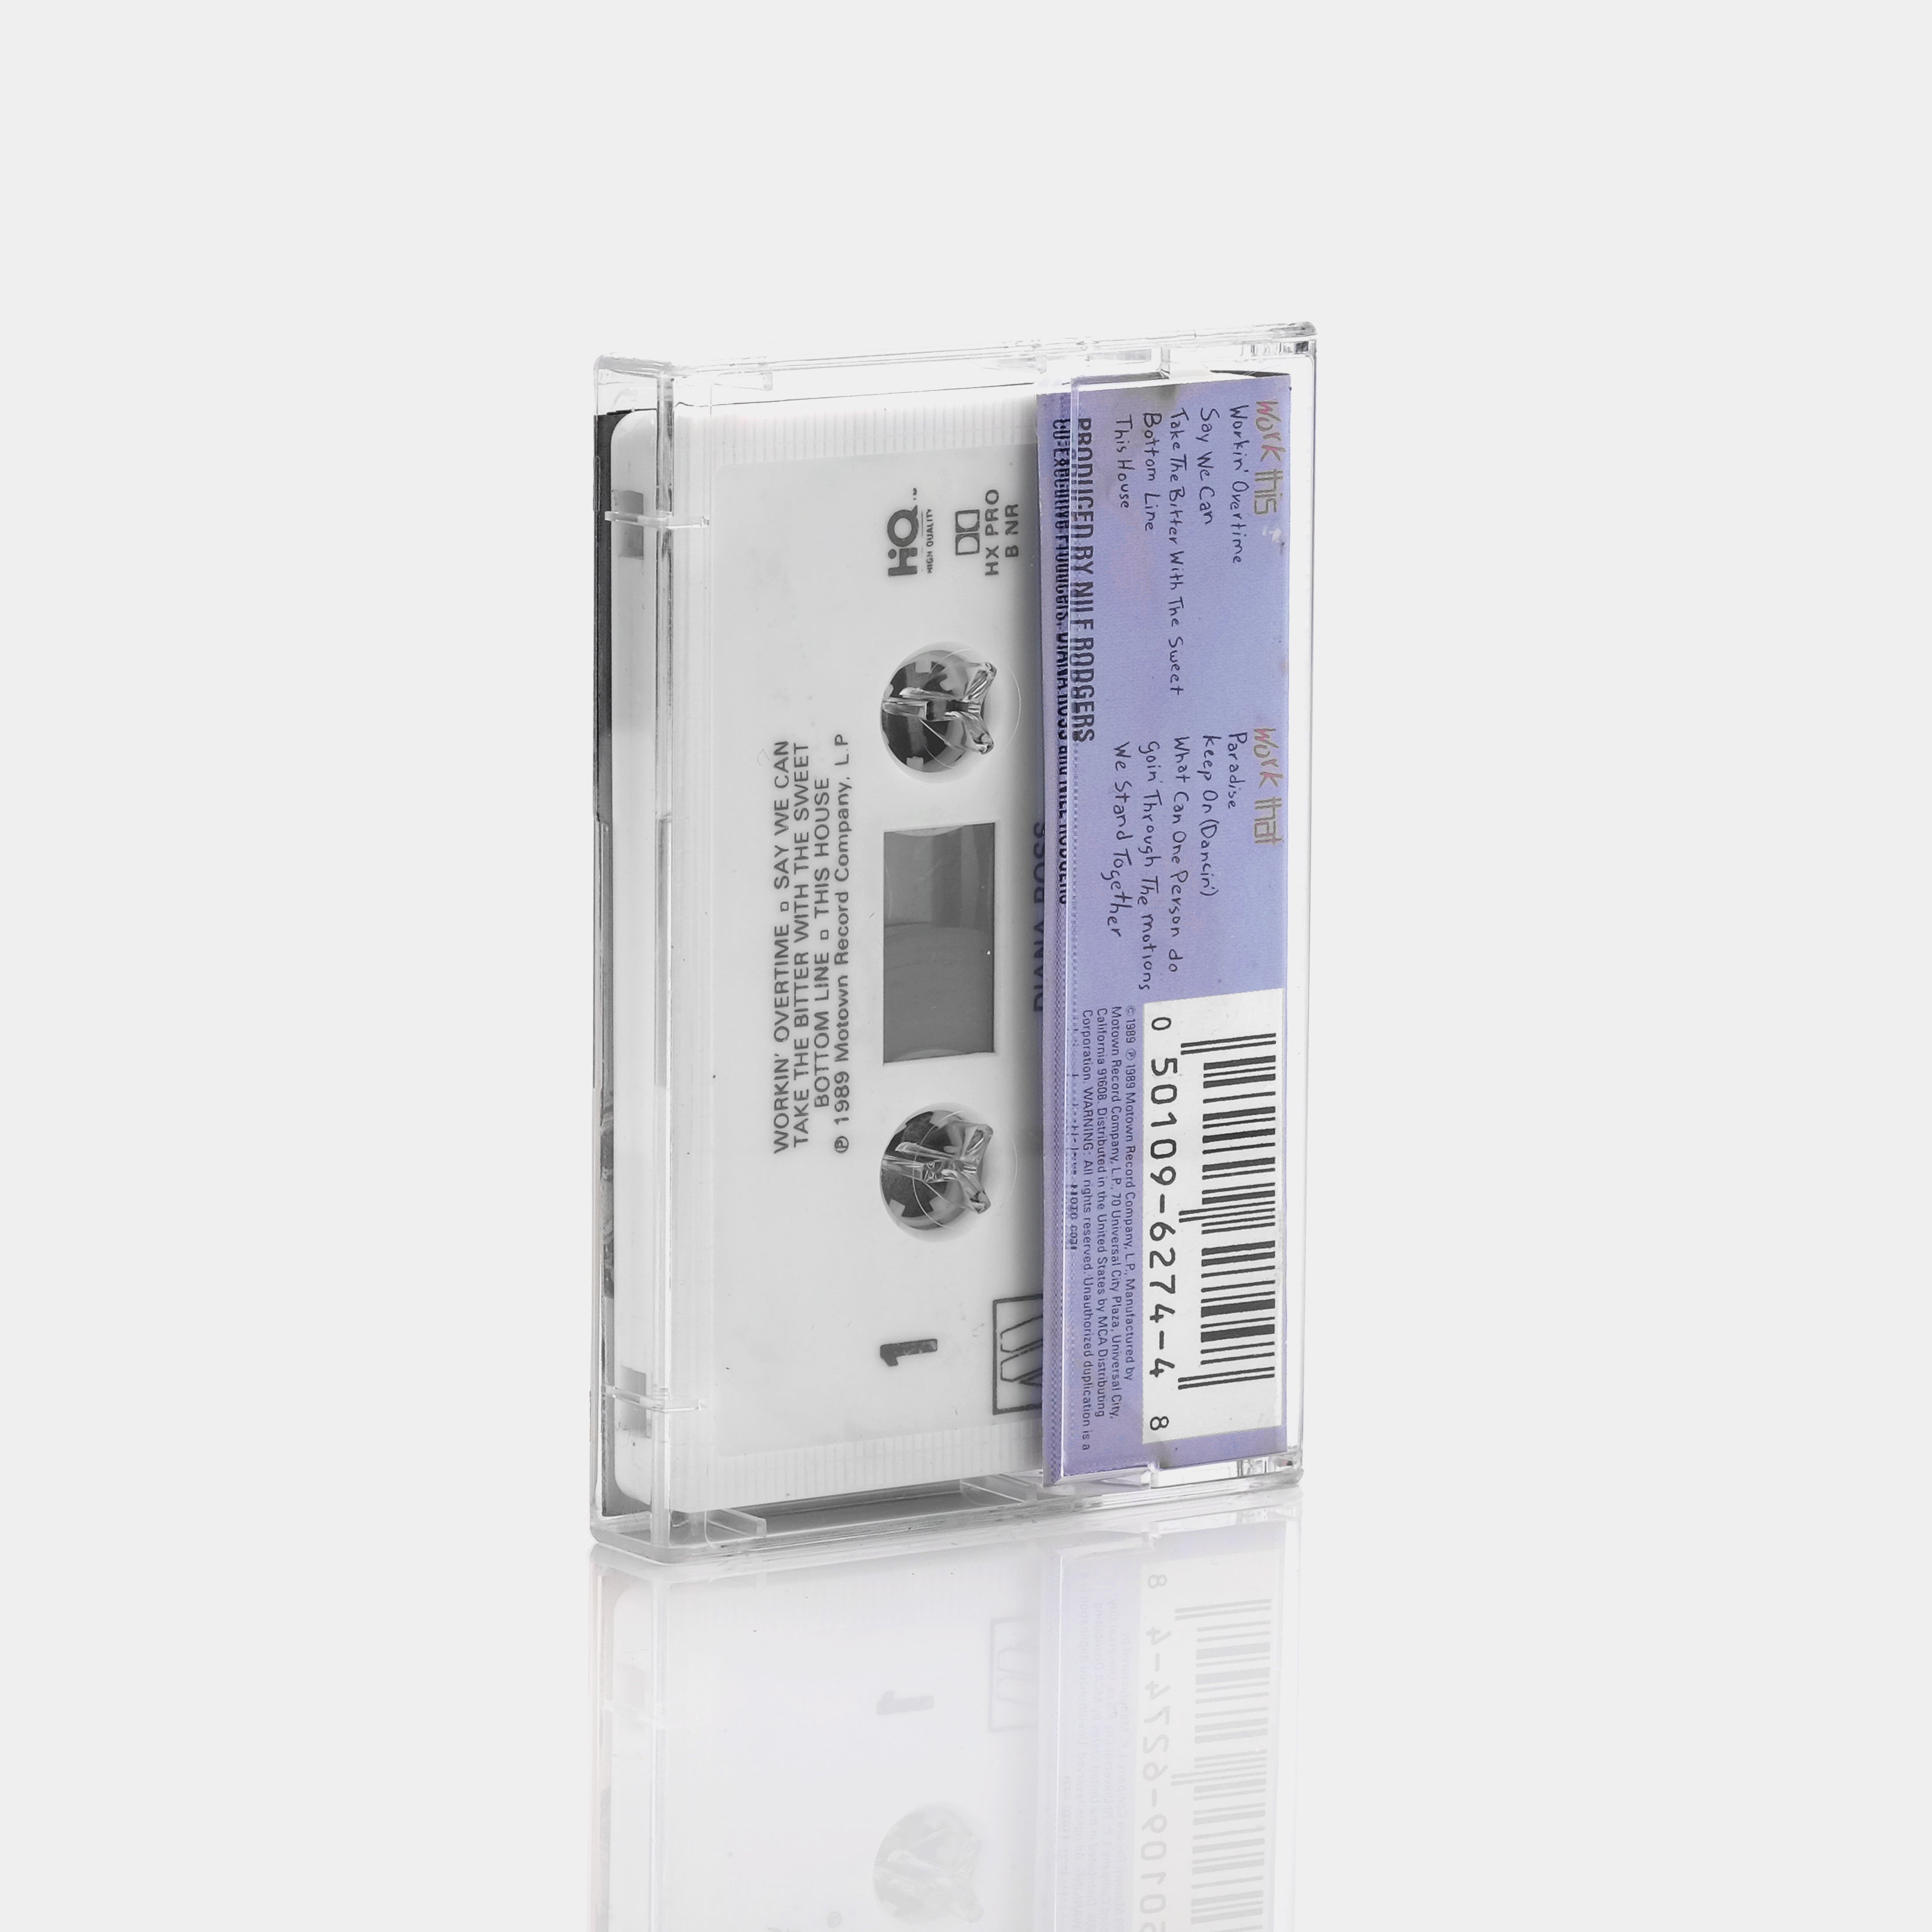 Diana Ross - Workin' Overtime Cassette Tape